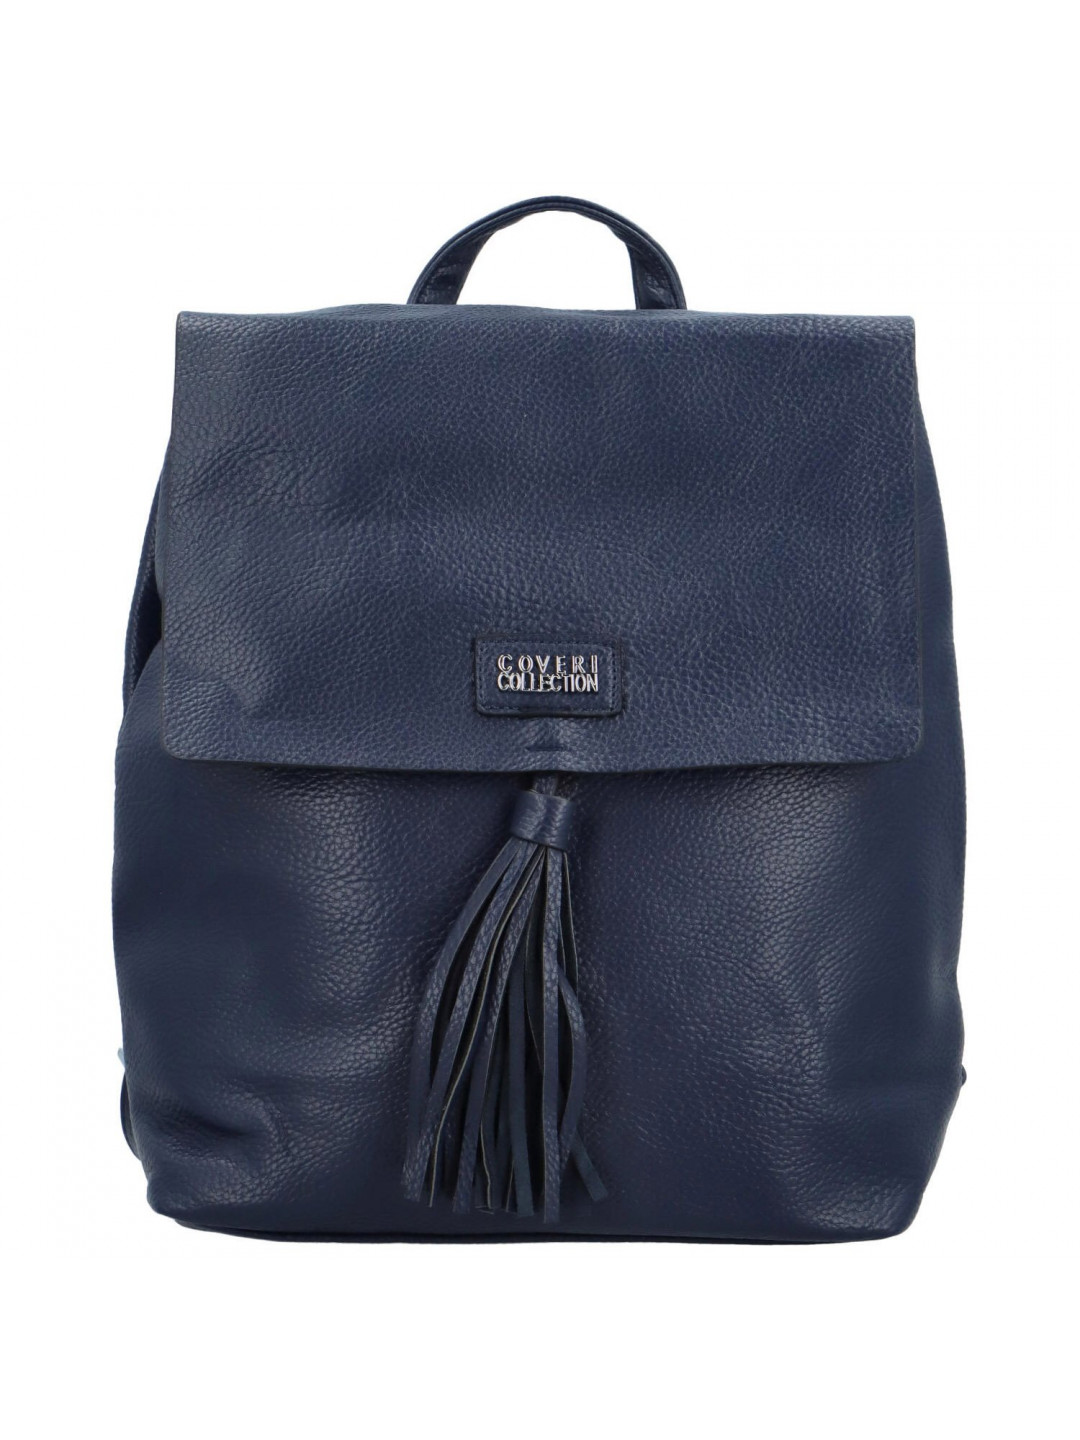 Stylový dámský koženkový kabelko batoh Barbalea modrý